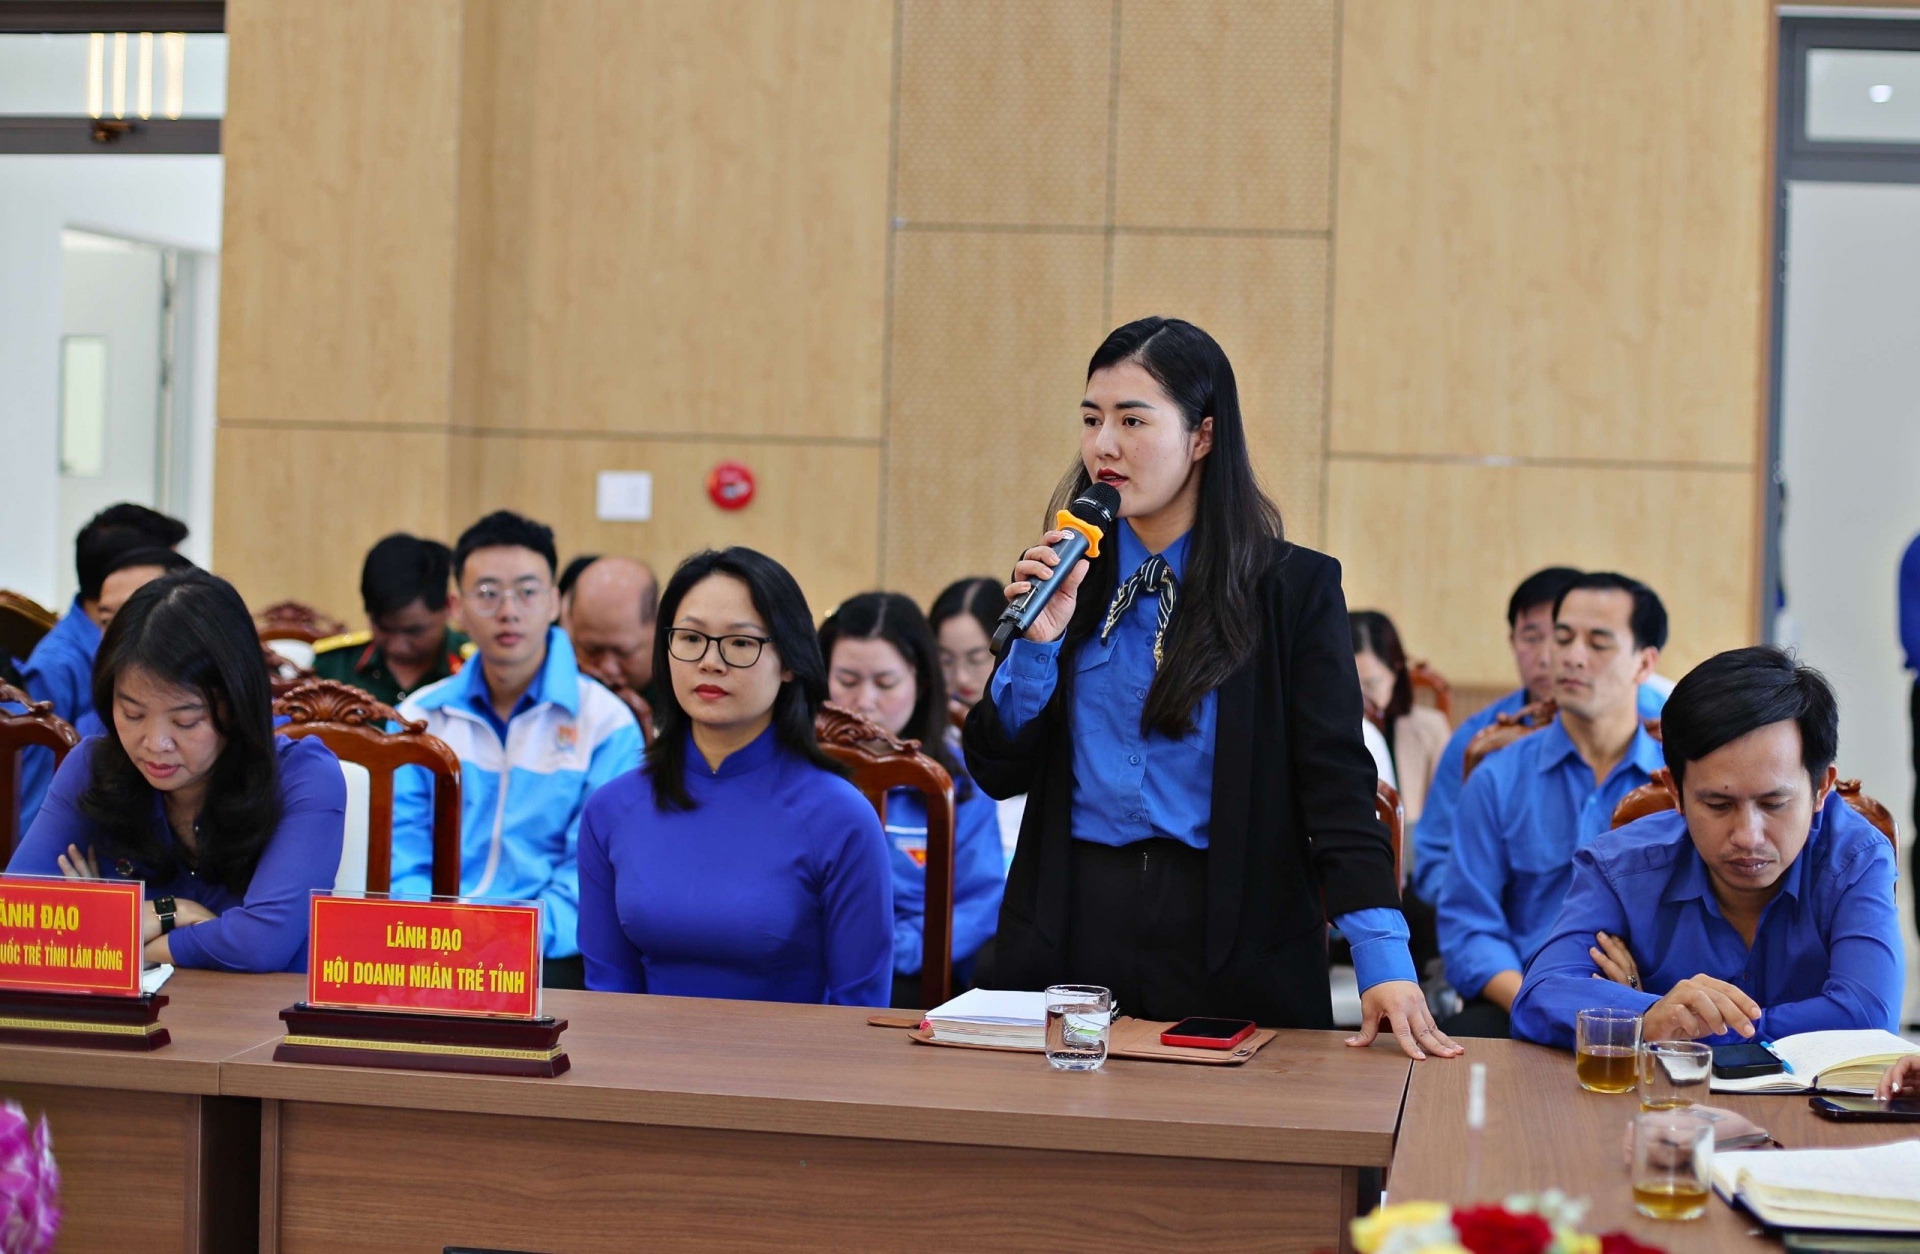 Bí thư Đoàn Khối Doanh nghiệp tỉnh Nguyễn Ý Nhi đưa ra những khó khăn trong việc thành lập tổ chức Đoàn tại doanh nghiệp ngoài Nhà nước